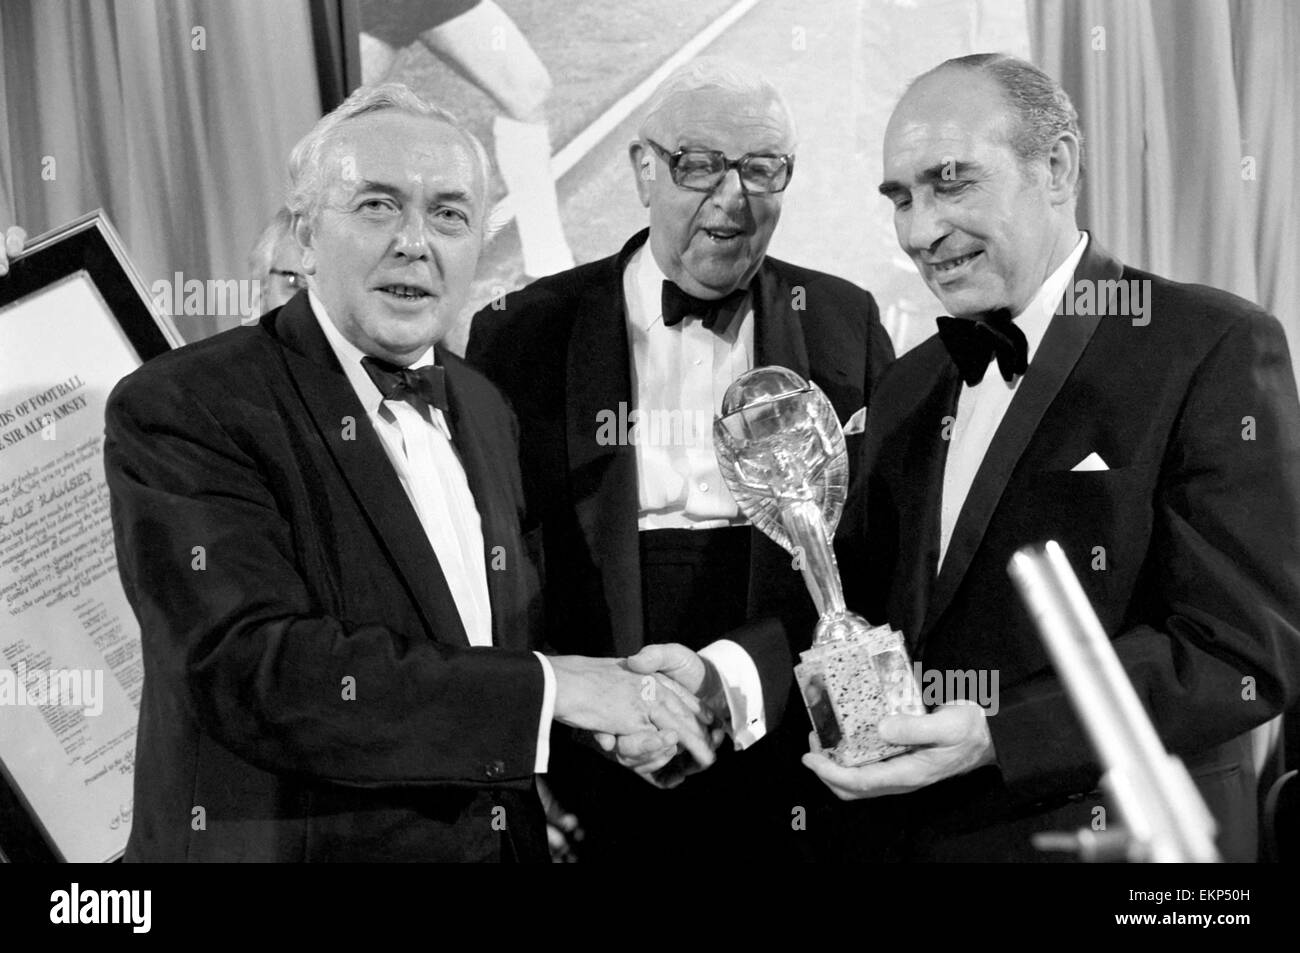 Sir Alf Ramsey avec le Premier Ministre Harold Wilson, lors d'un dîner pour célébrer le 8e anniversaire de l'Angleterre la boire la coupe du monde. Juillet 1974 74-4559-002 Banque D'Images